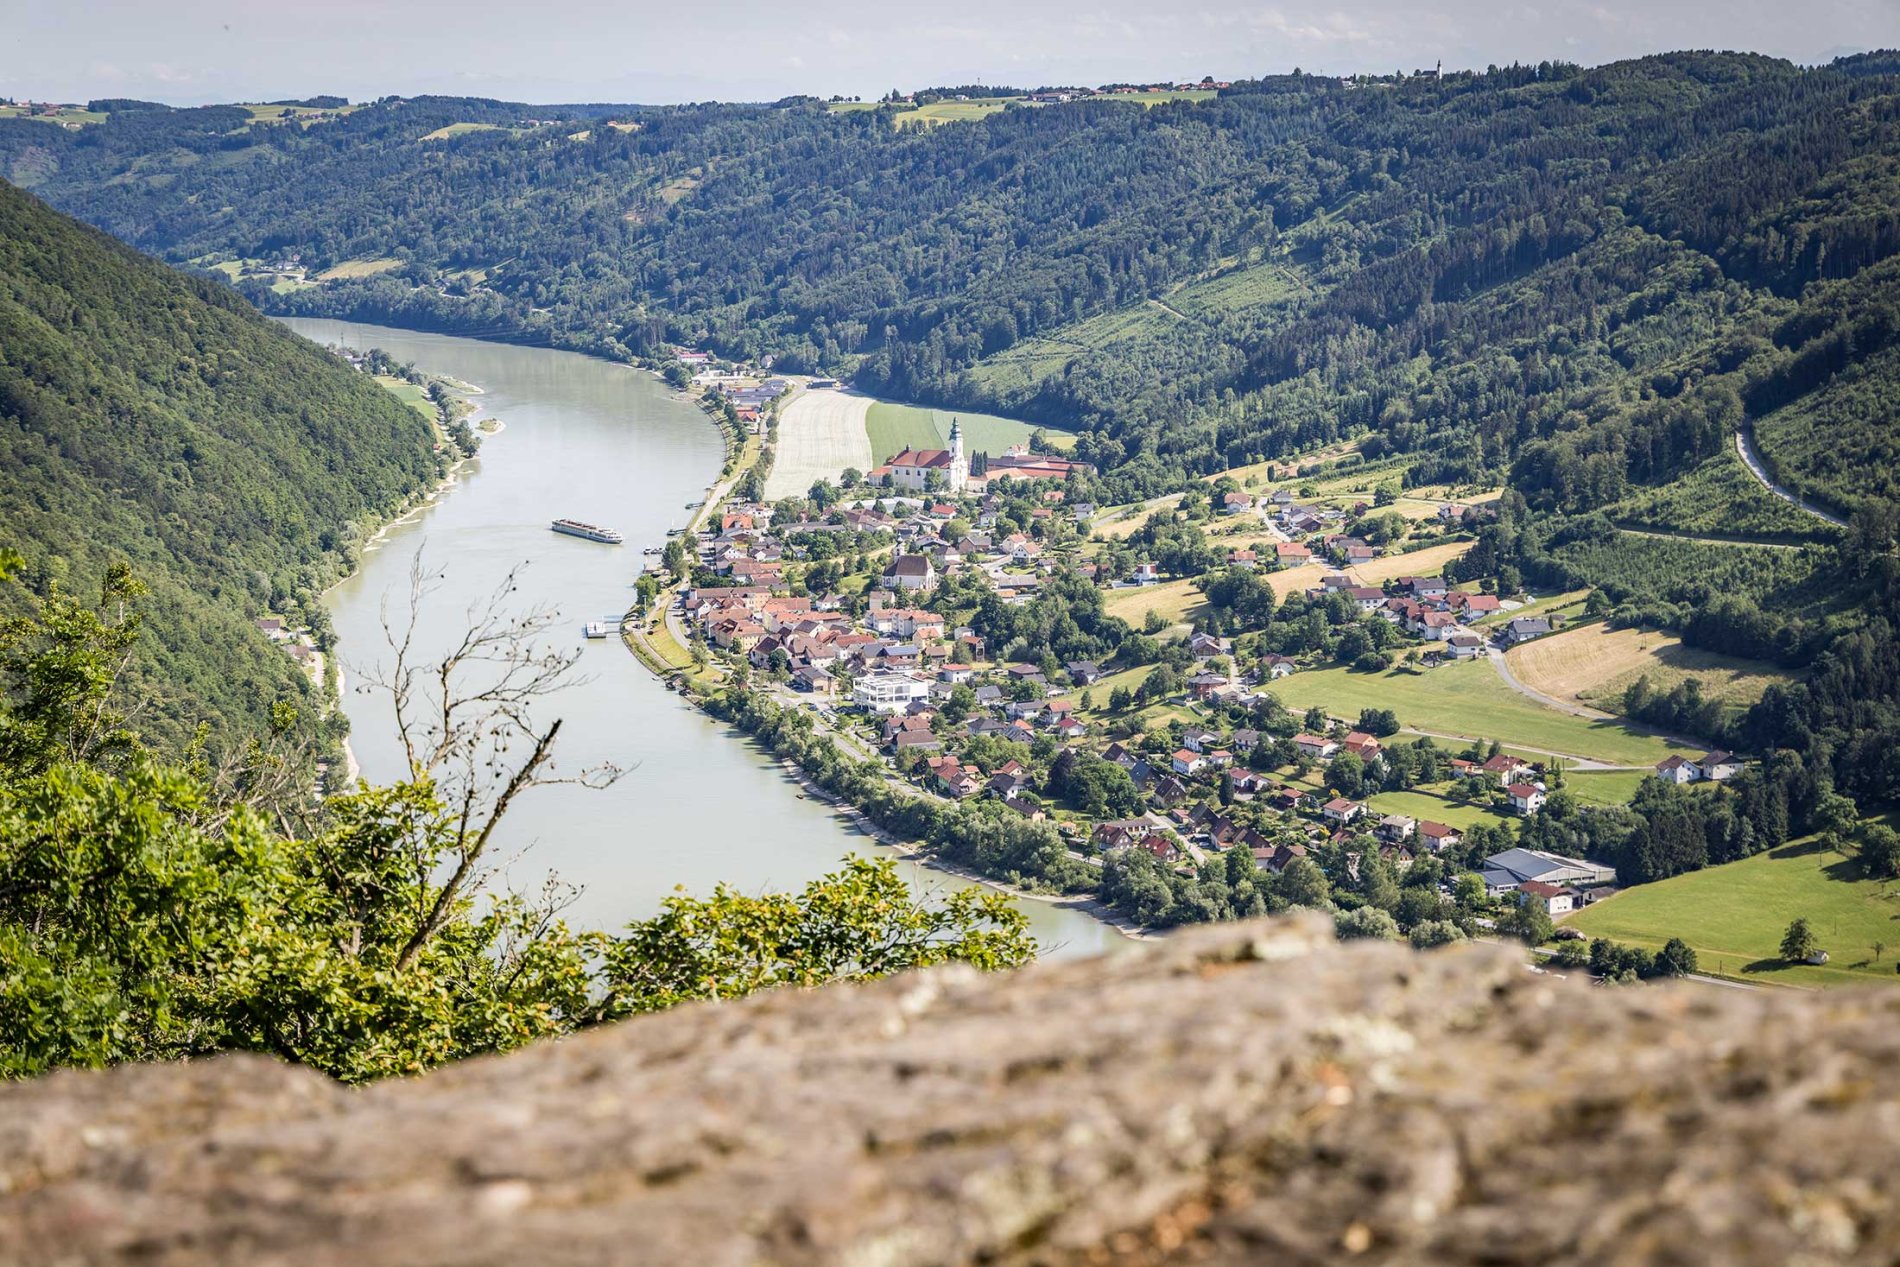 Farbenprächtig präsentiert sich die Smaragdeidechse im Naturschutzgebiet Donauleiten